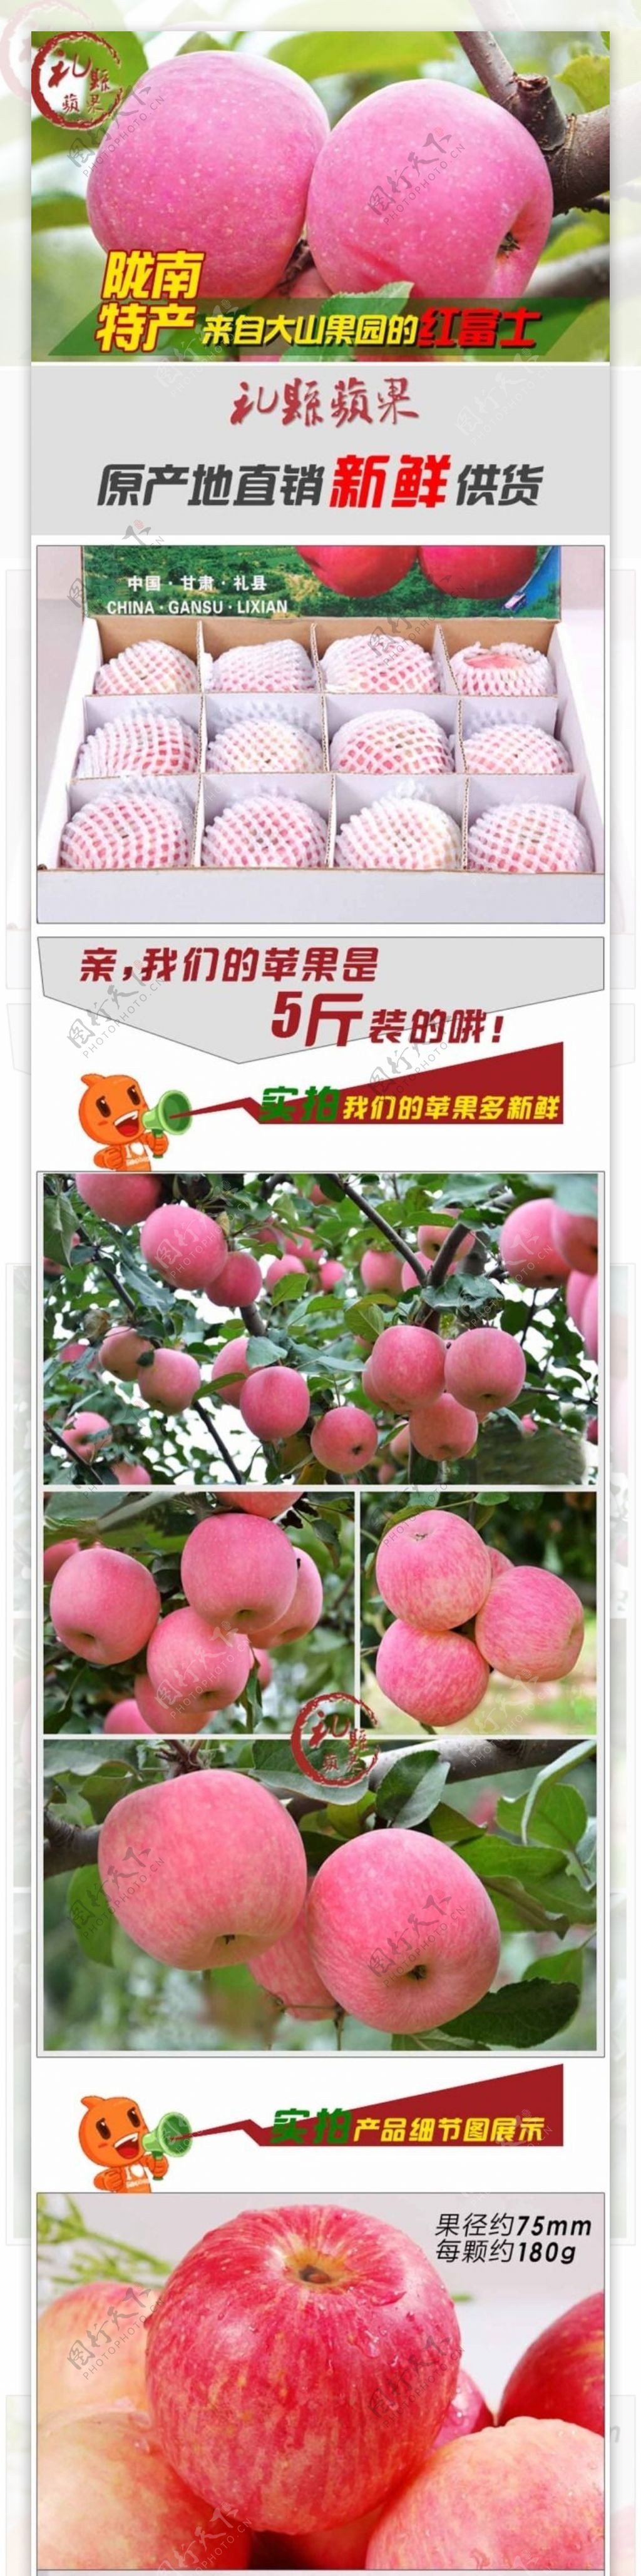 山东礼县红富士苹果水果描述图psd